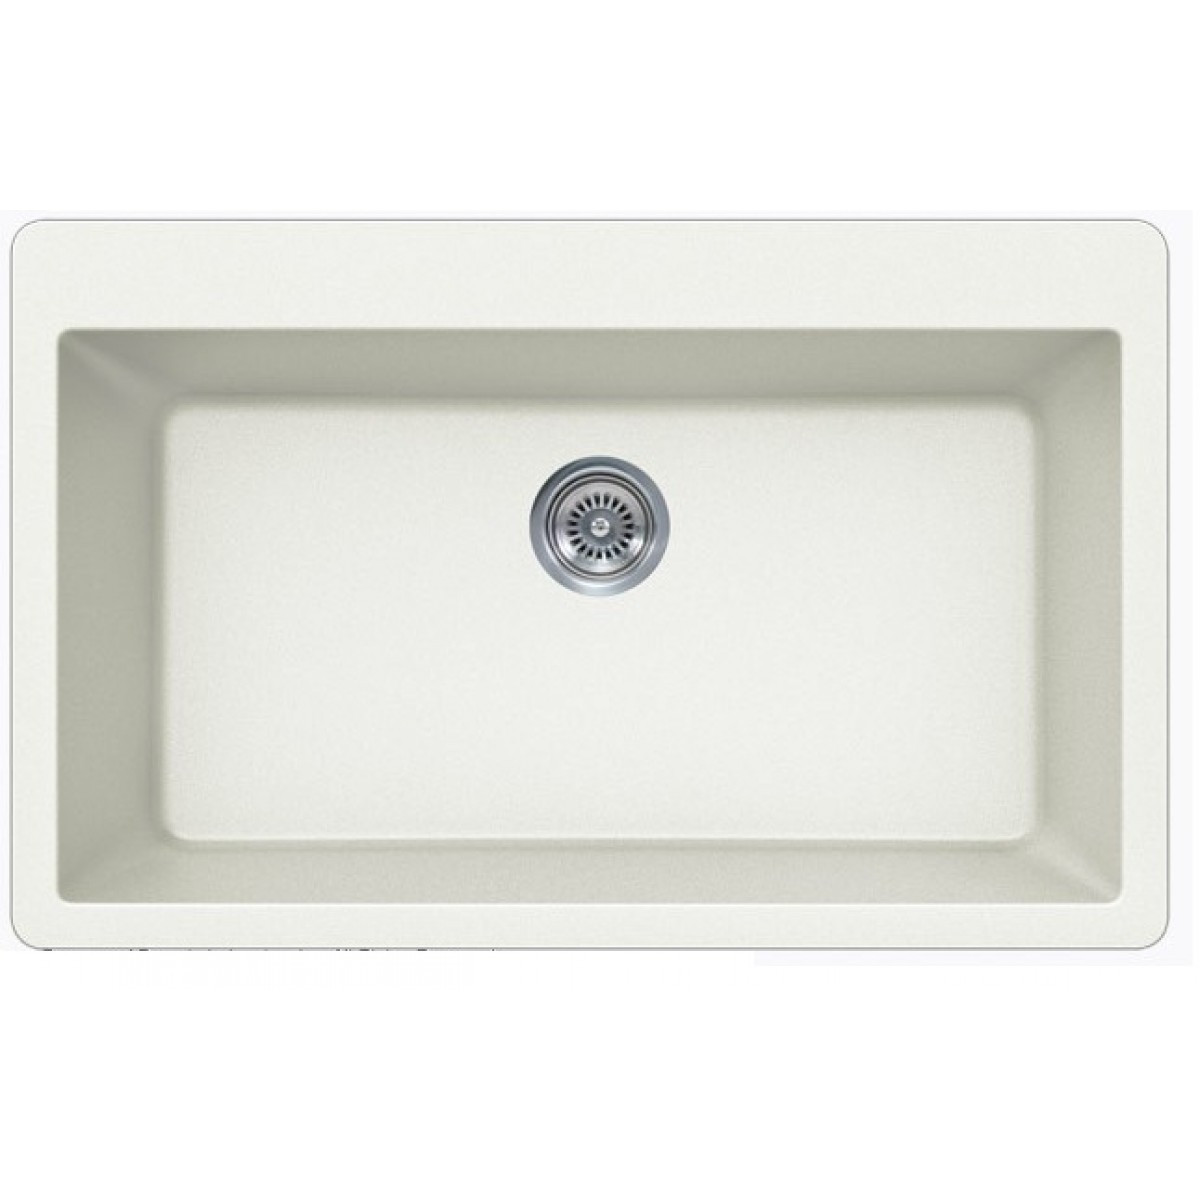 White Single Bowl Kitchen Sink
 White Quartz posite Single Bowl Undermount Drop In